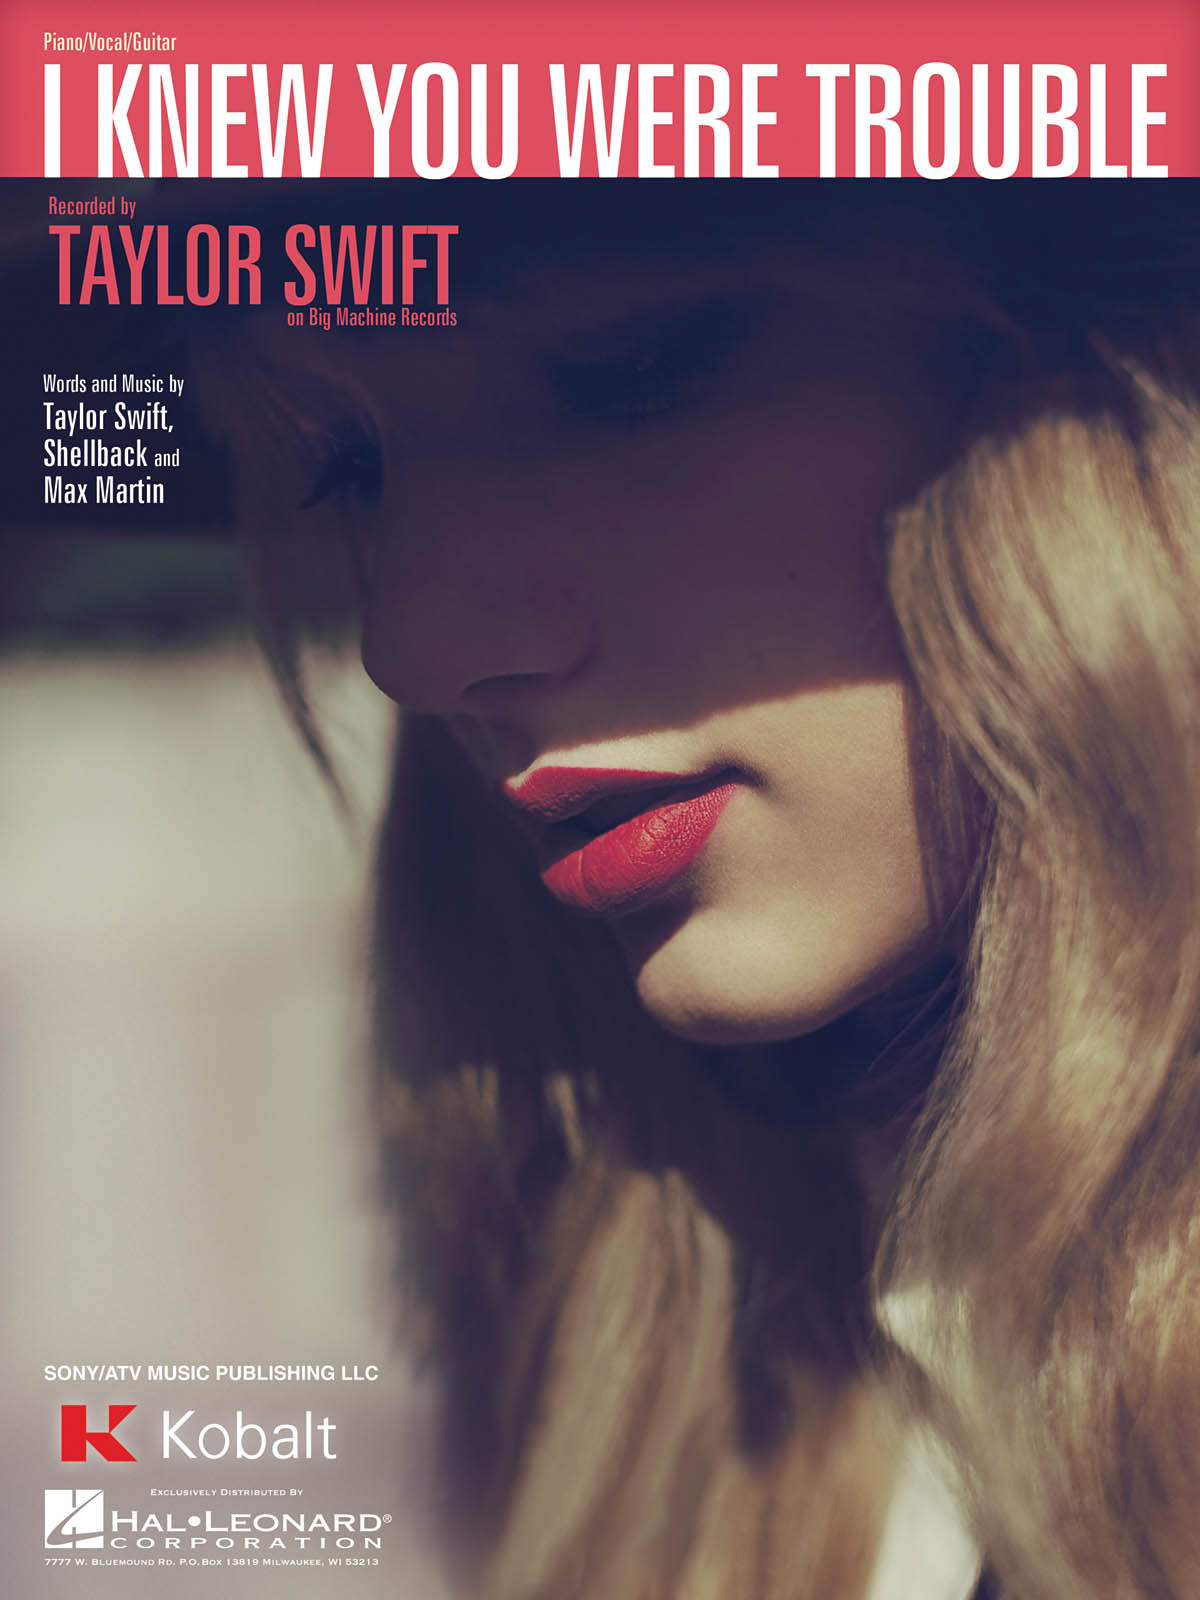 Тейлор свифт i knew. Тейлор Свифт Trouble. Taylor Swift i knew you were Trouble. Taylor Swift i knew you were Trouble обложка. I knew you were Trouble.